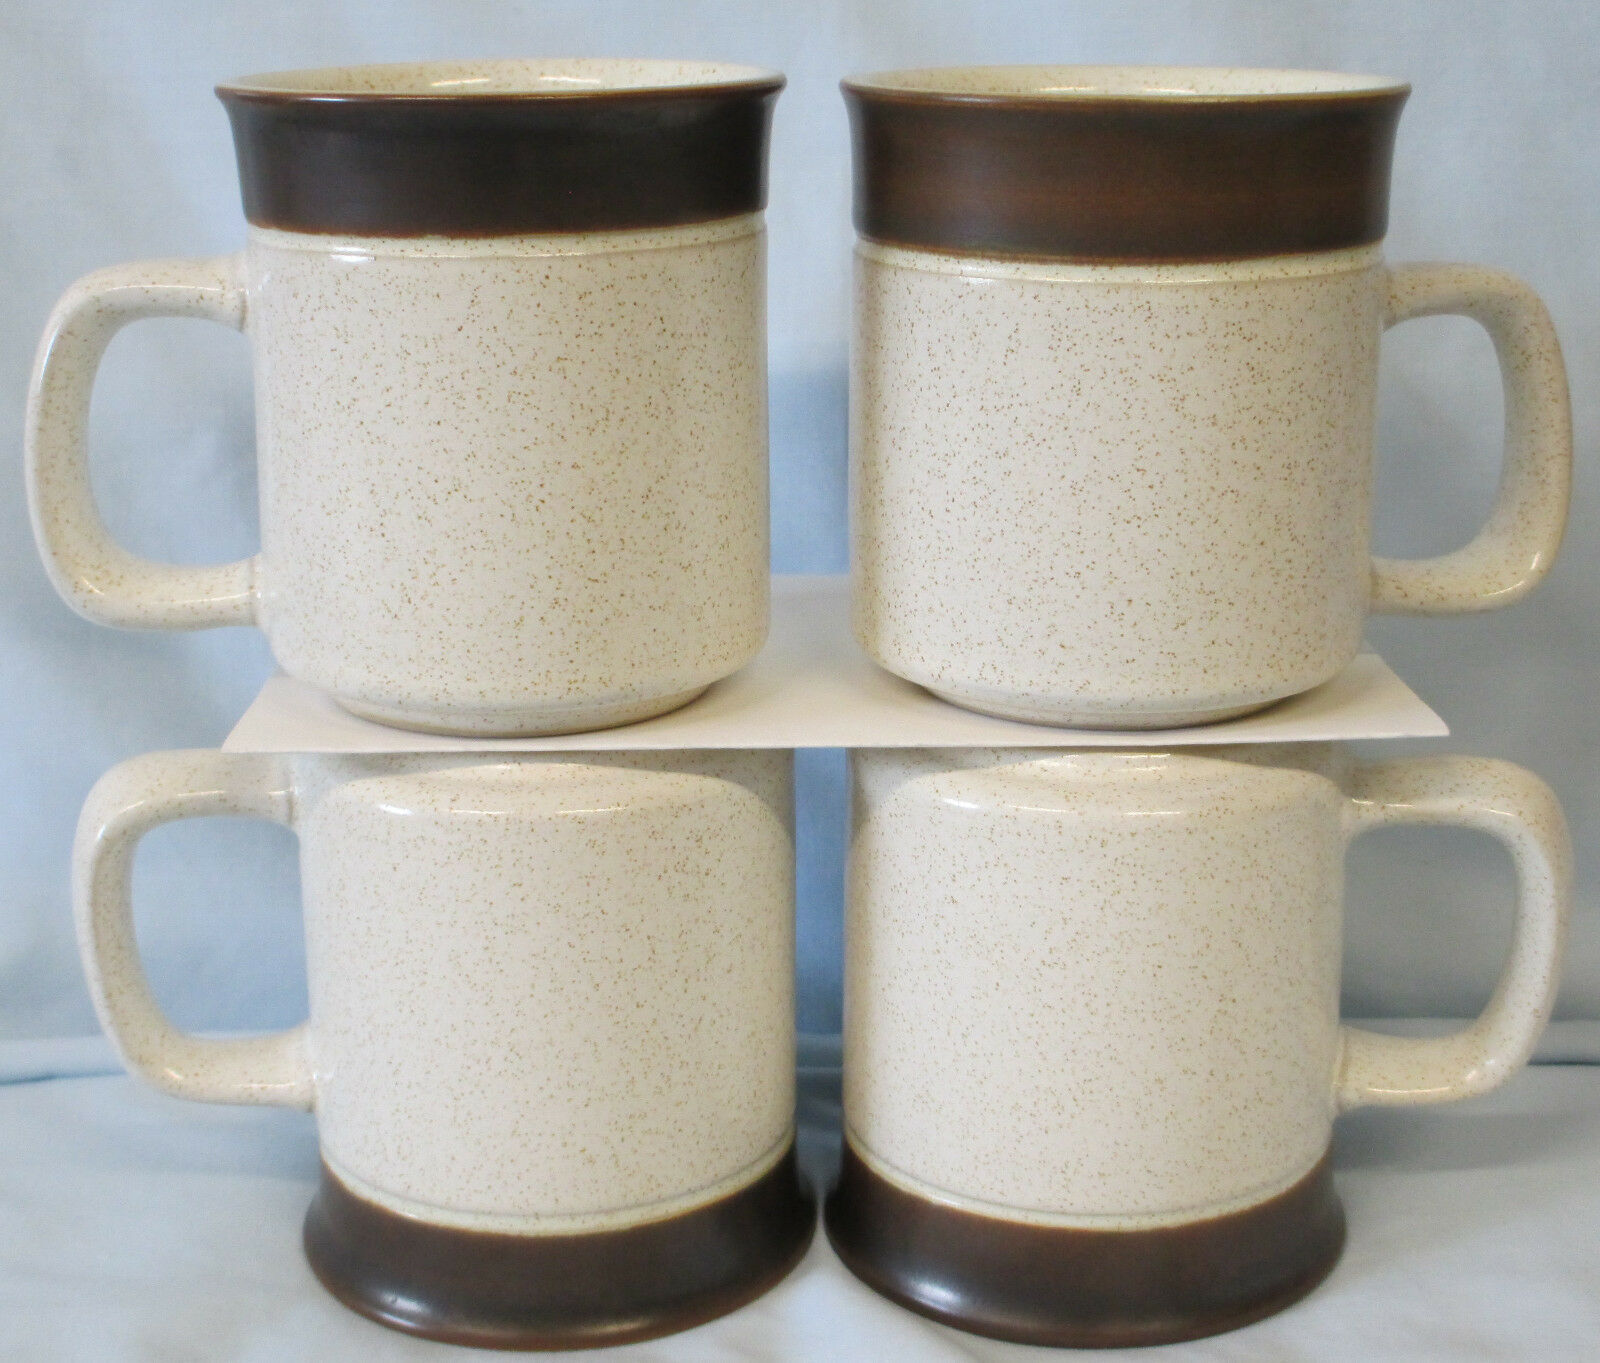 Primary image for Denby Brown Russet Mug Set of 4